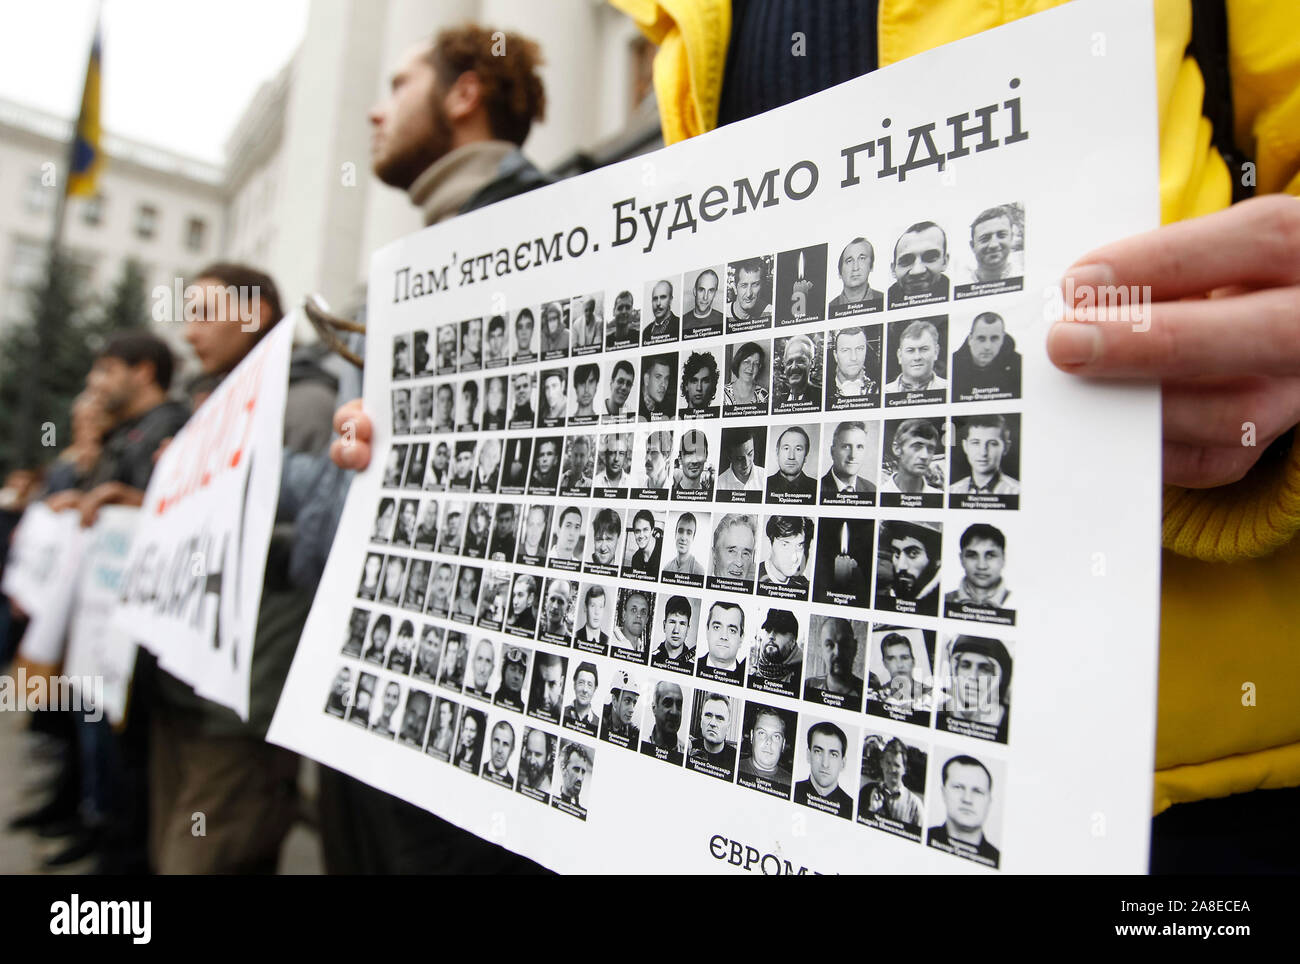 Ein Mann hält ein Schild mit Porträts von toten Aktivisten oder die Helden der Himmlischen Hundert, außerhalb des Präsidialbüros während des Protestes. Verwandte und Aktivisten, die Nachfrage nicht Untersuchung der Maidan bei Veranstaltungen und der Tod des Aktivisten während der Revolution der Würde oder Euromaidan zu stoppen. Am 21. November 2019 die Ukrainer werden der 6. Jahrestag des Maidan oder der Euromaidan Revolution 2013-14, bei der mehr als hundert regierungsfeindlichen Demonstranten getötet wurden und waren die Helden des Himmlischen Hundert betitelt. Stockfoto